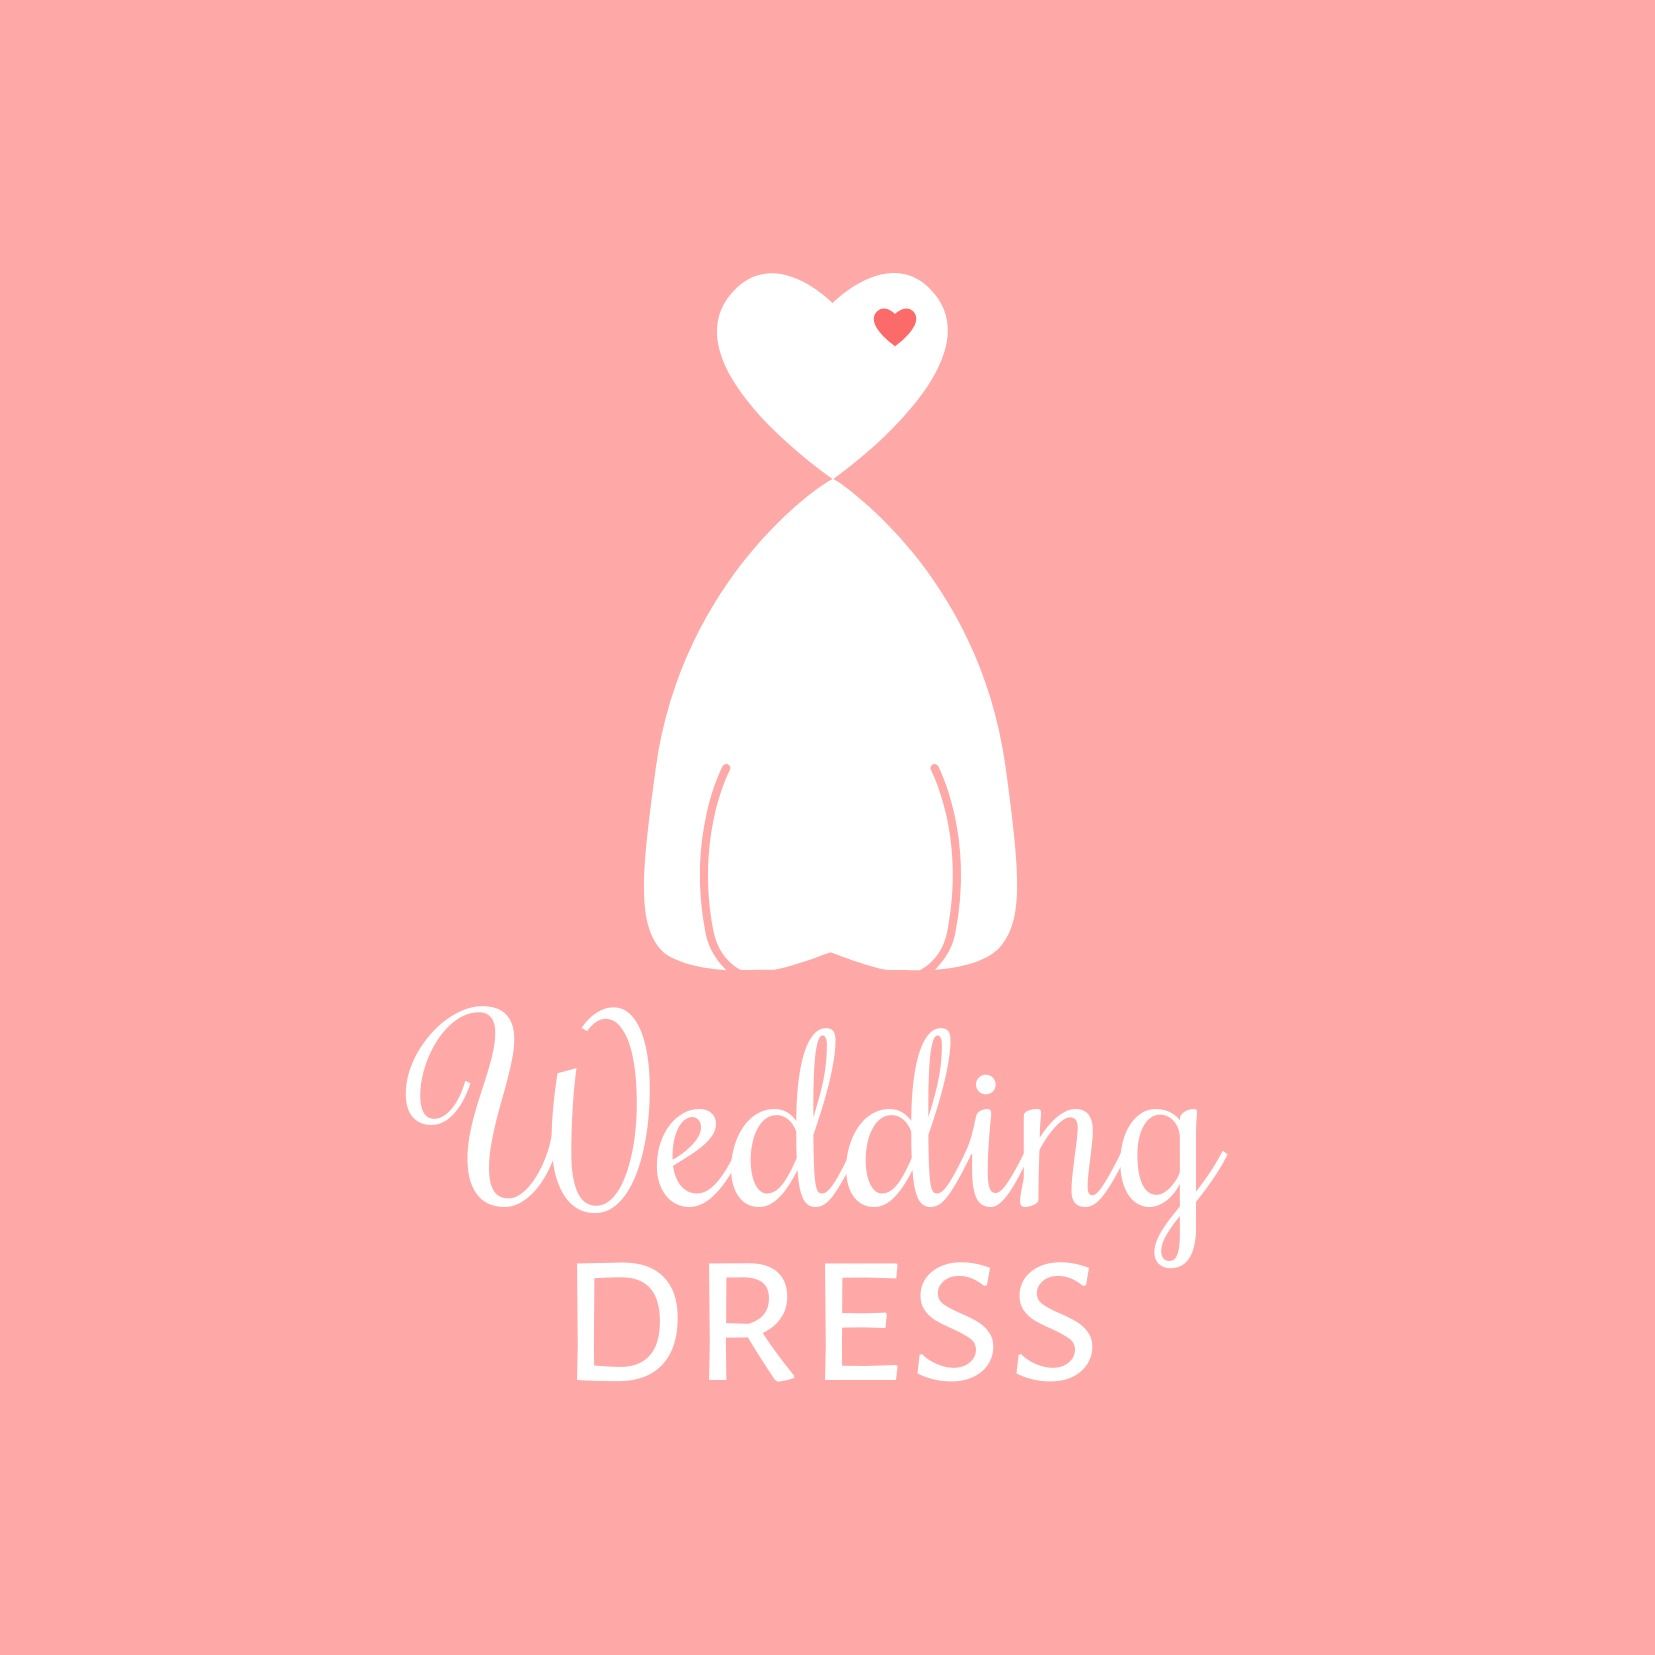 Logotipo de vestido de novia con corpiño en forma de corazón - Fuente Rochester elegante y refinada - Imagen